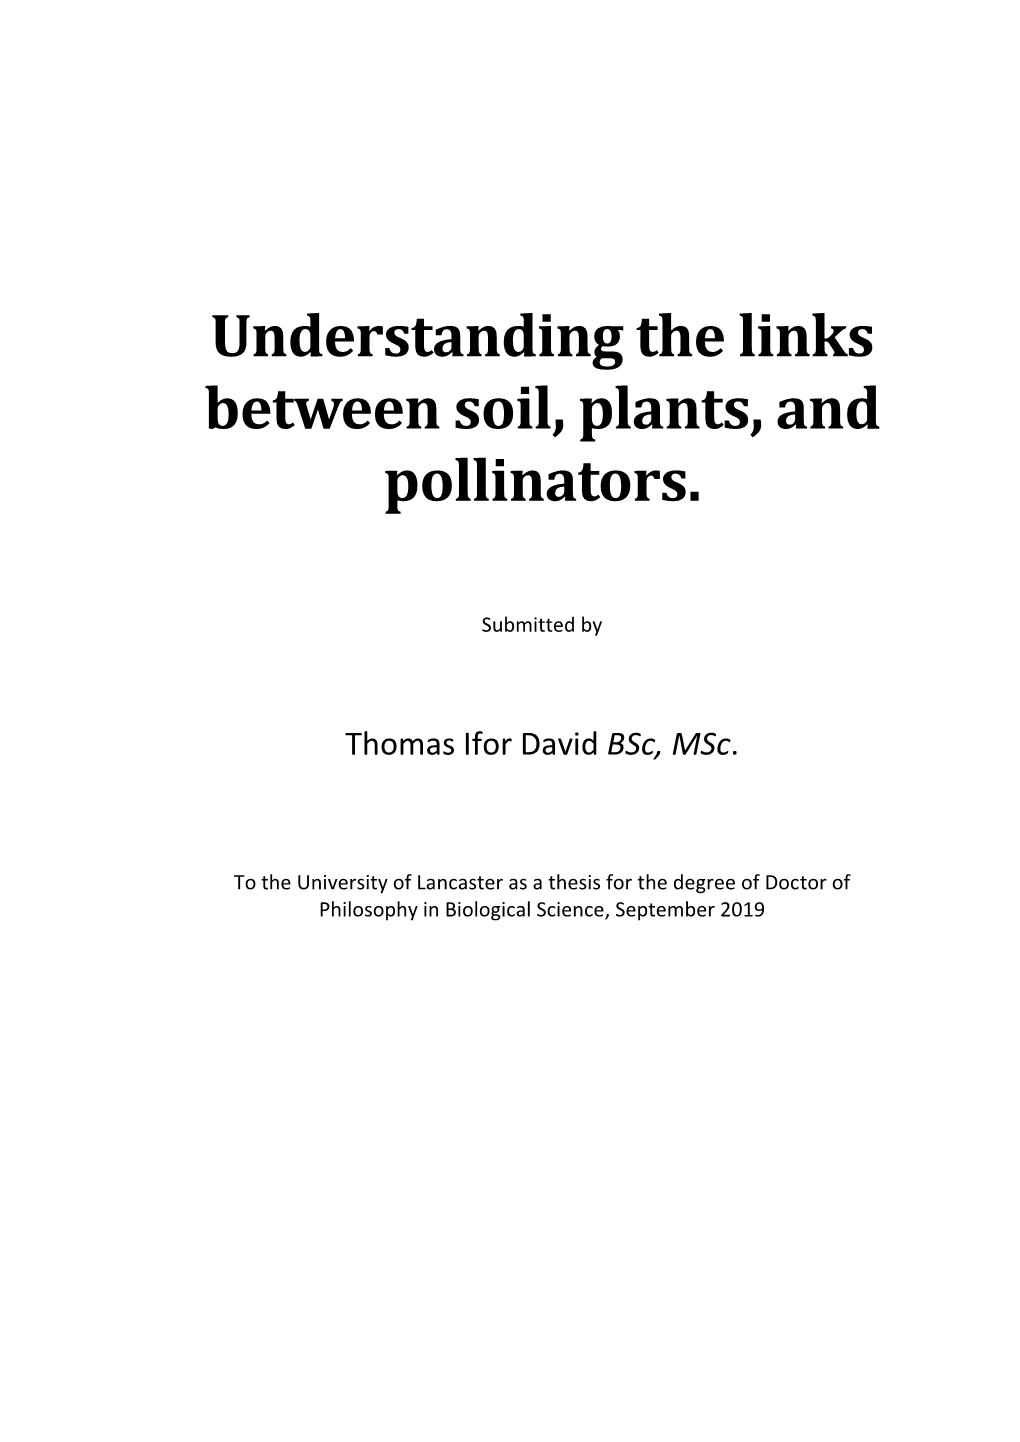 Understanding the Links Between Soil, Plants, and Pollinators